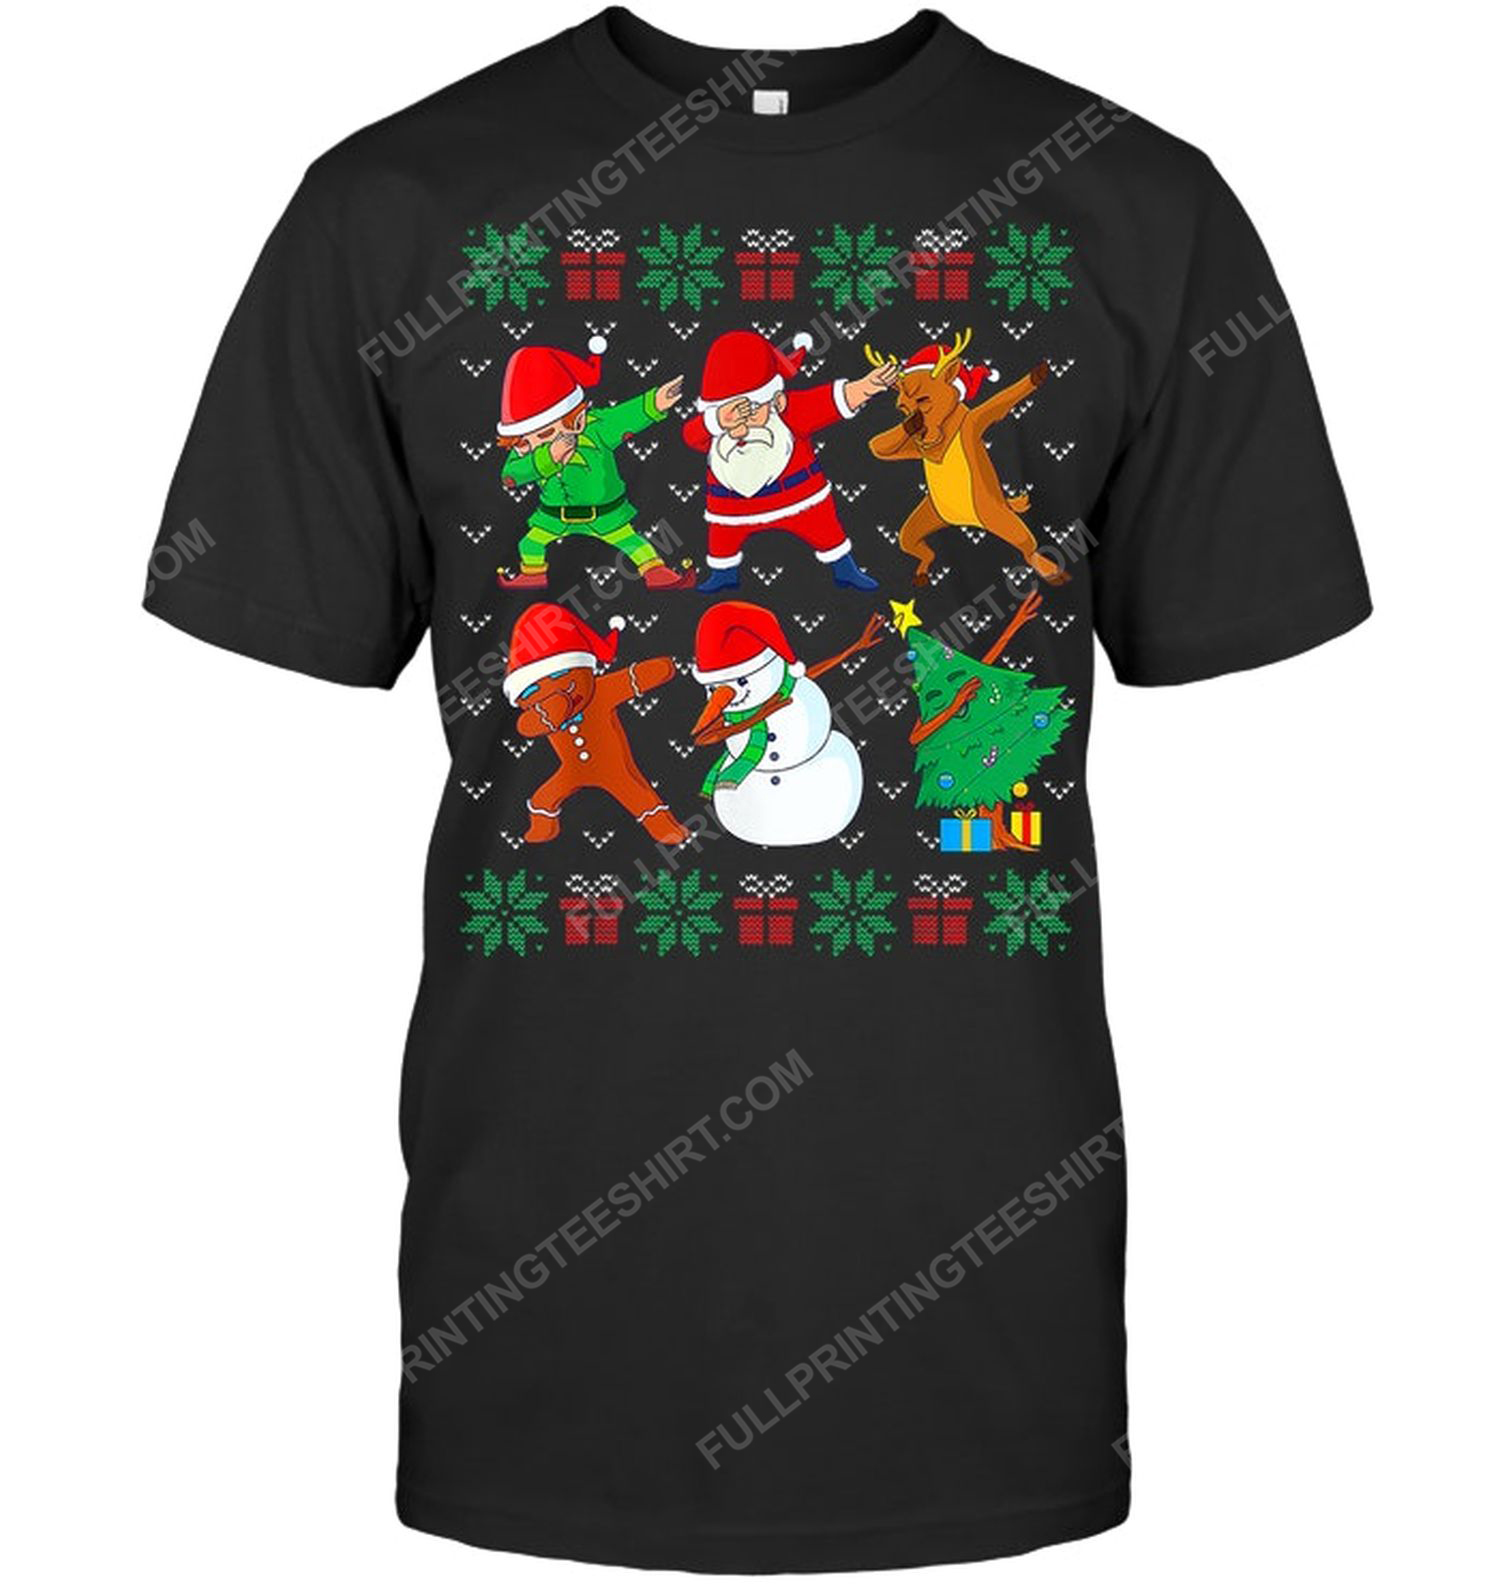 Santa dab squad christmas night tshirt